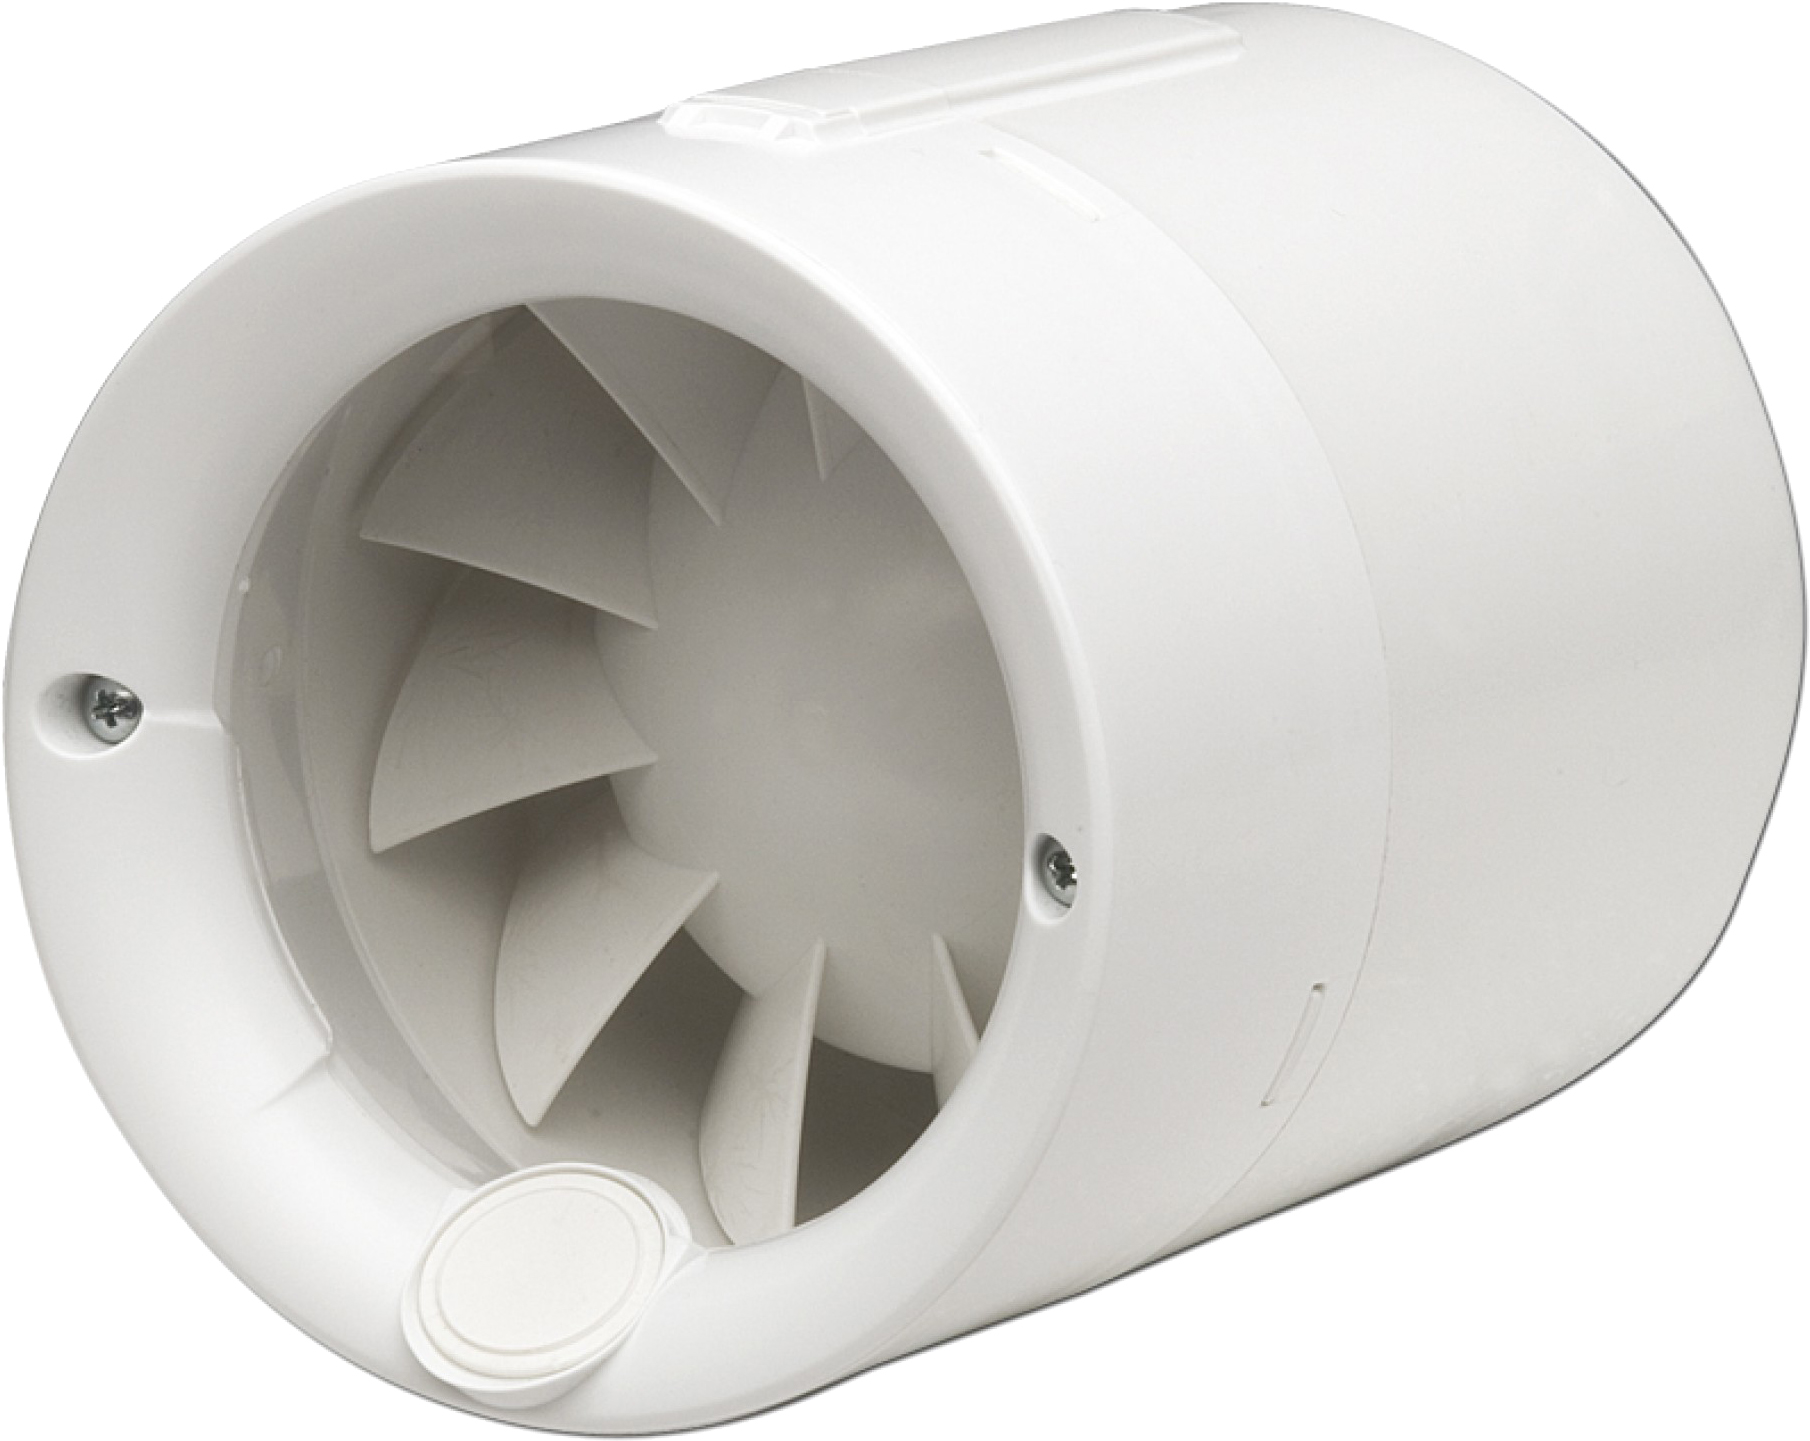 Канальный вентилятор Soler&Palau Silentub-200 в интернет-магазине, главное фото